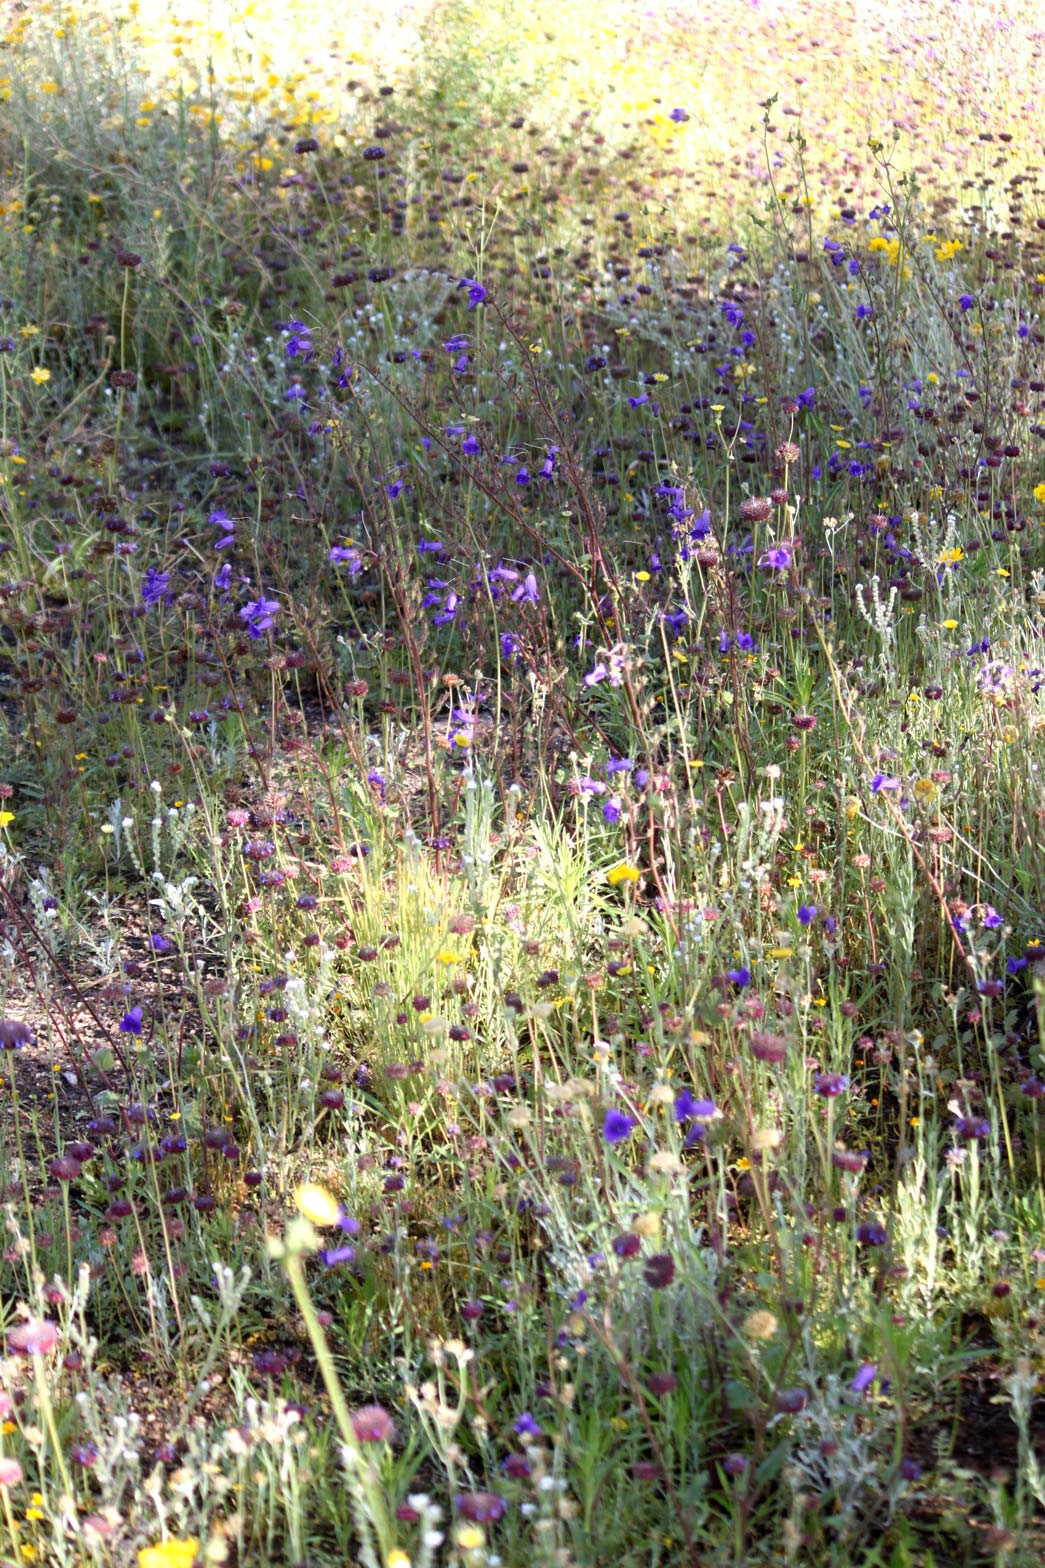 Desert Canterbury Bell flowers blooming in the Wildflower Field.